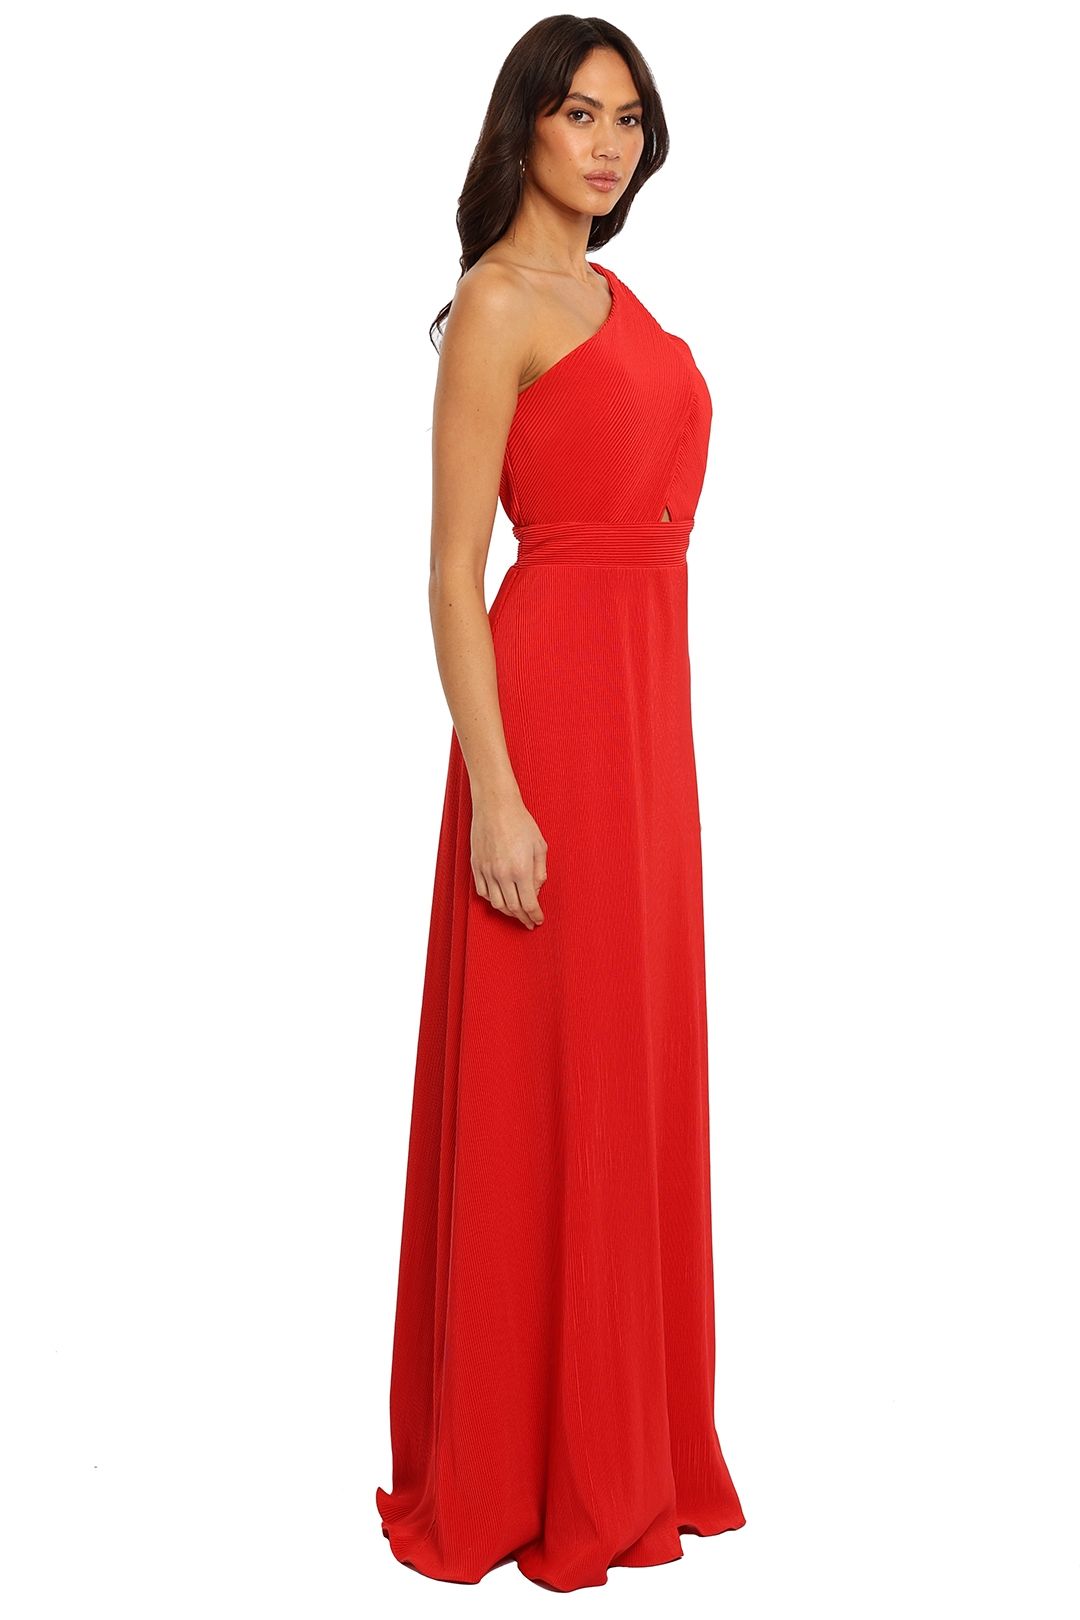 Dior Gown Red Langhem